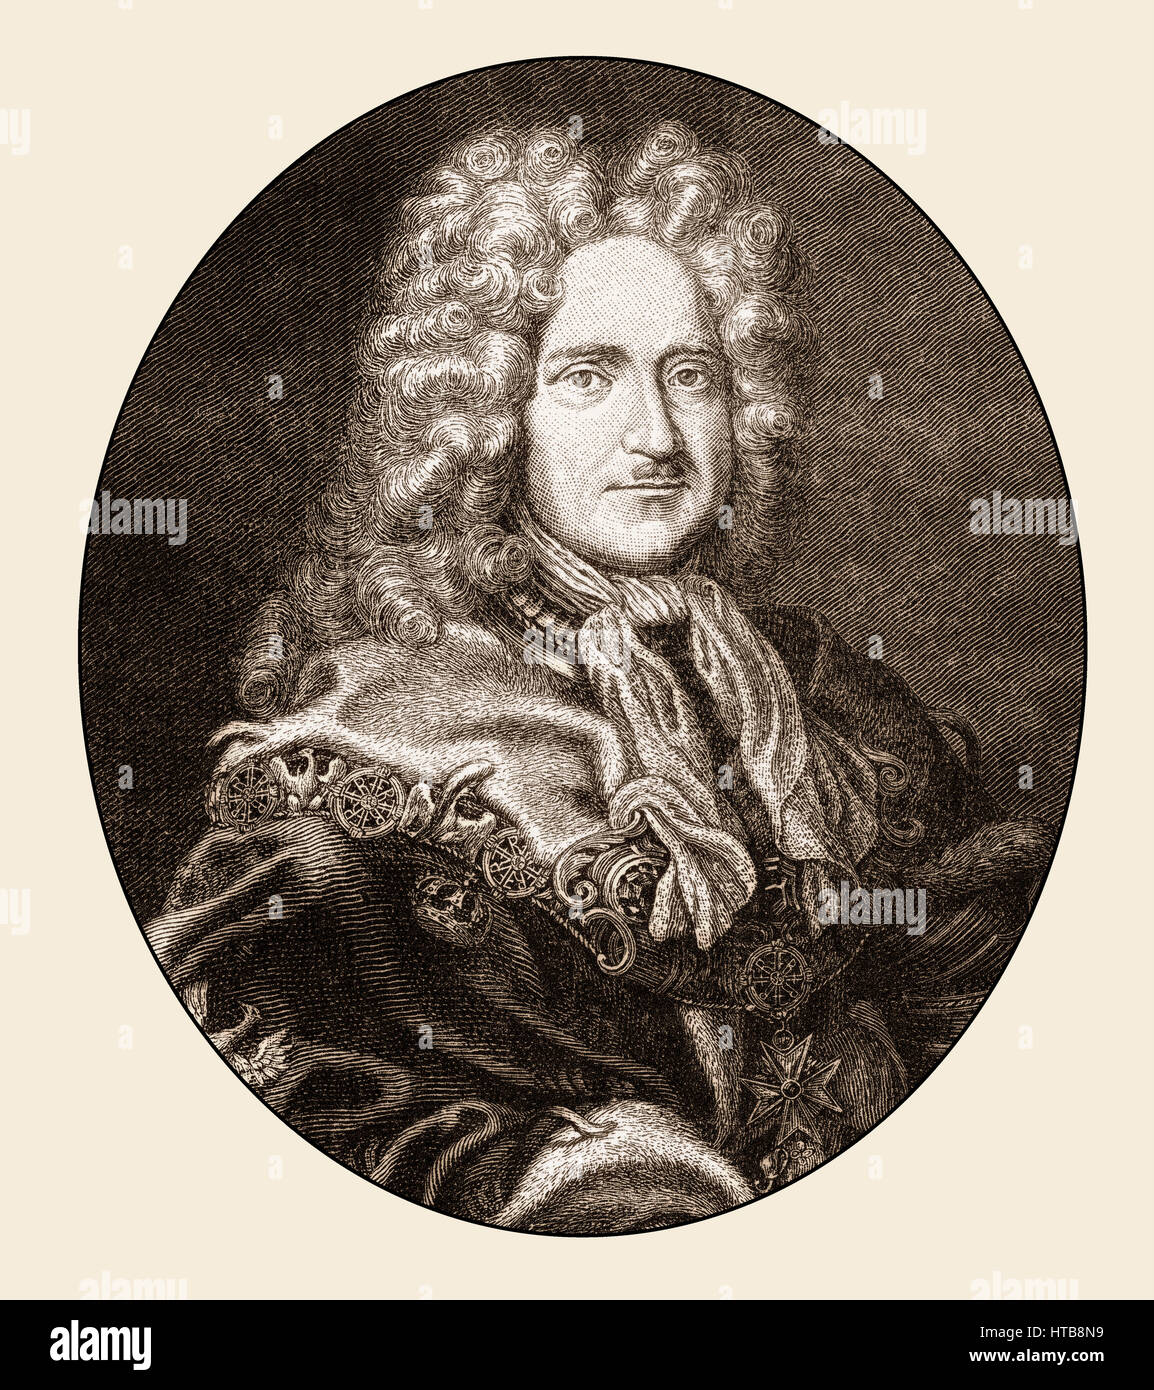 Frederick I, 1657 - 1713, le premier roi de Prusse Frédéric III, Électeur de Brandebourg, Banque D'Images